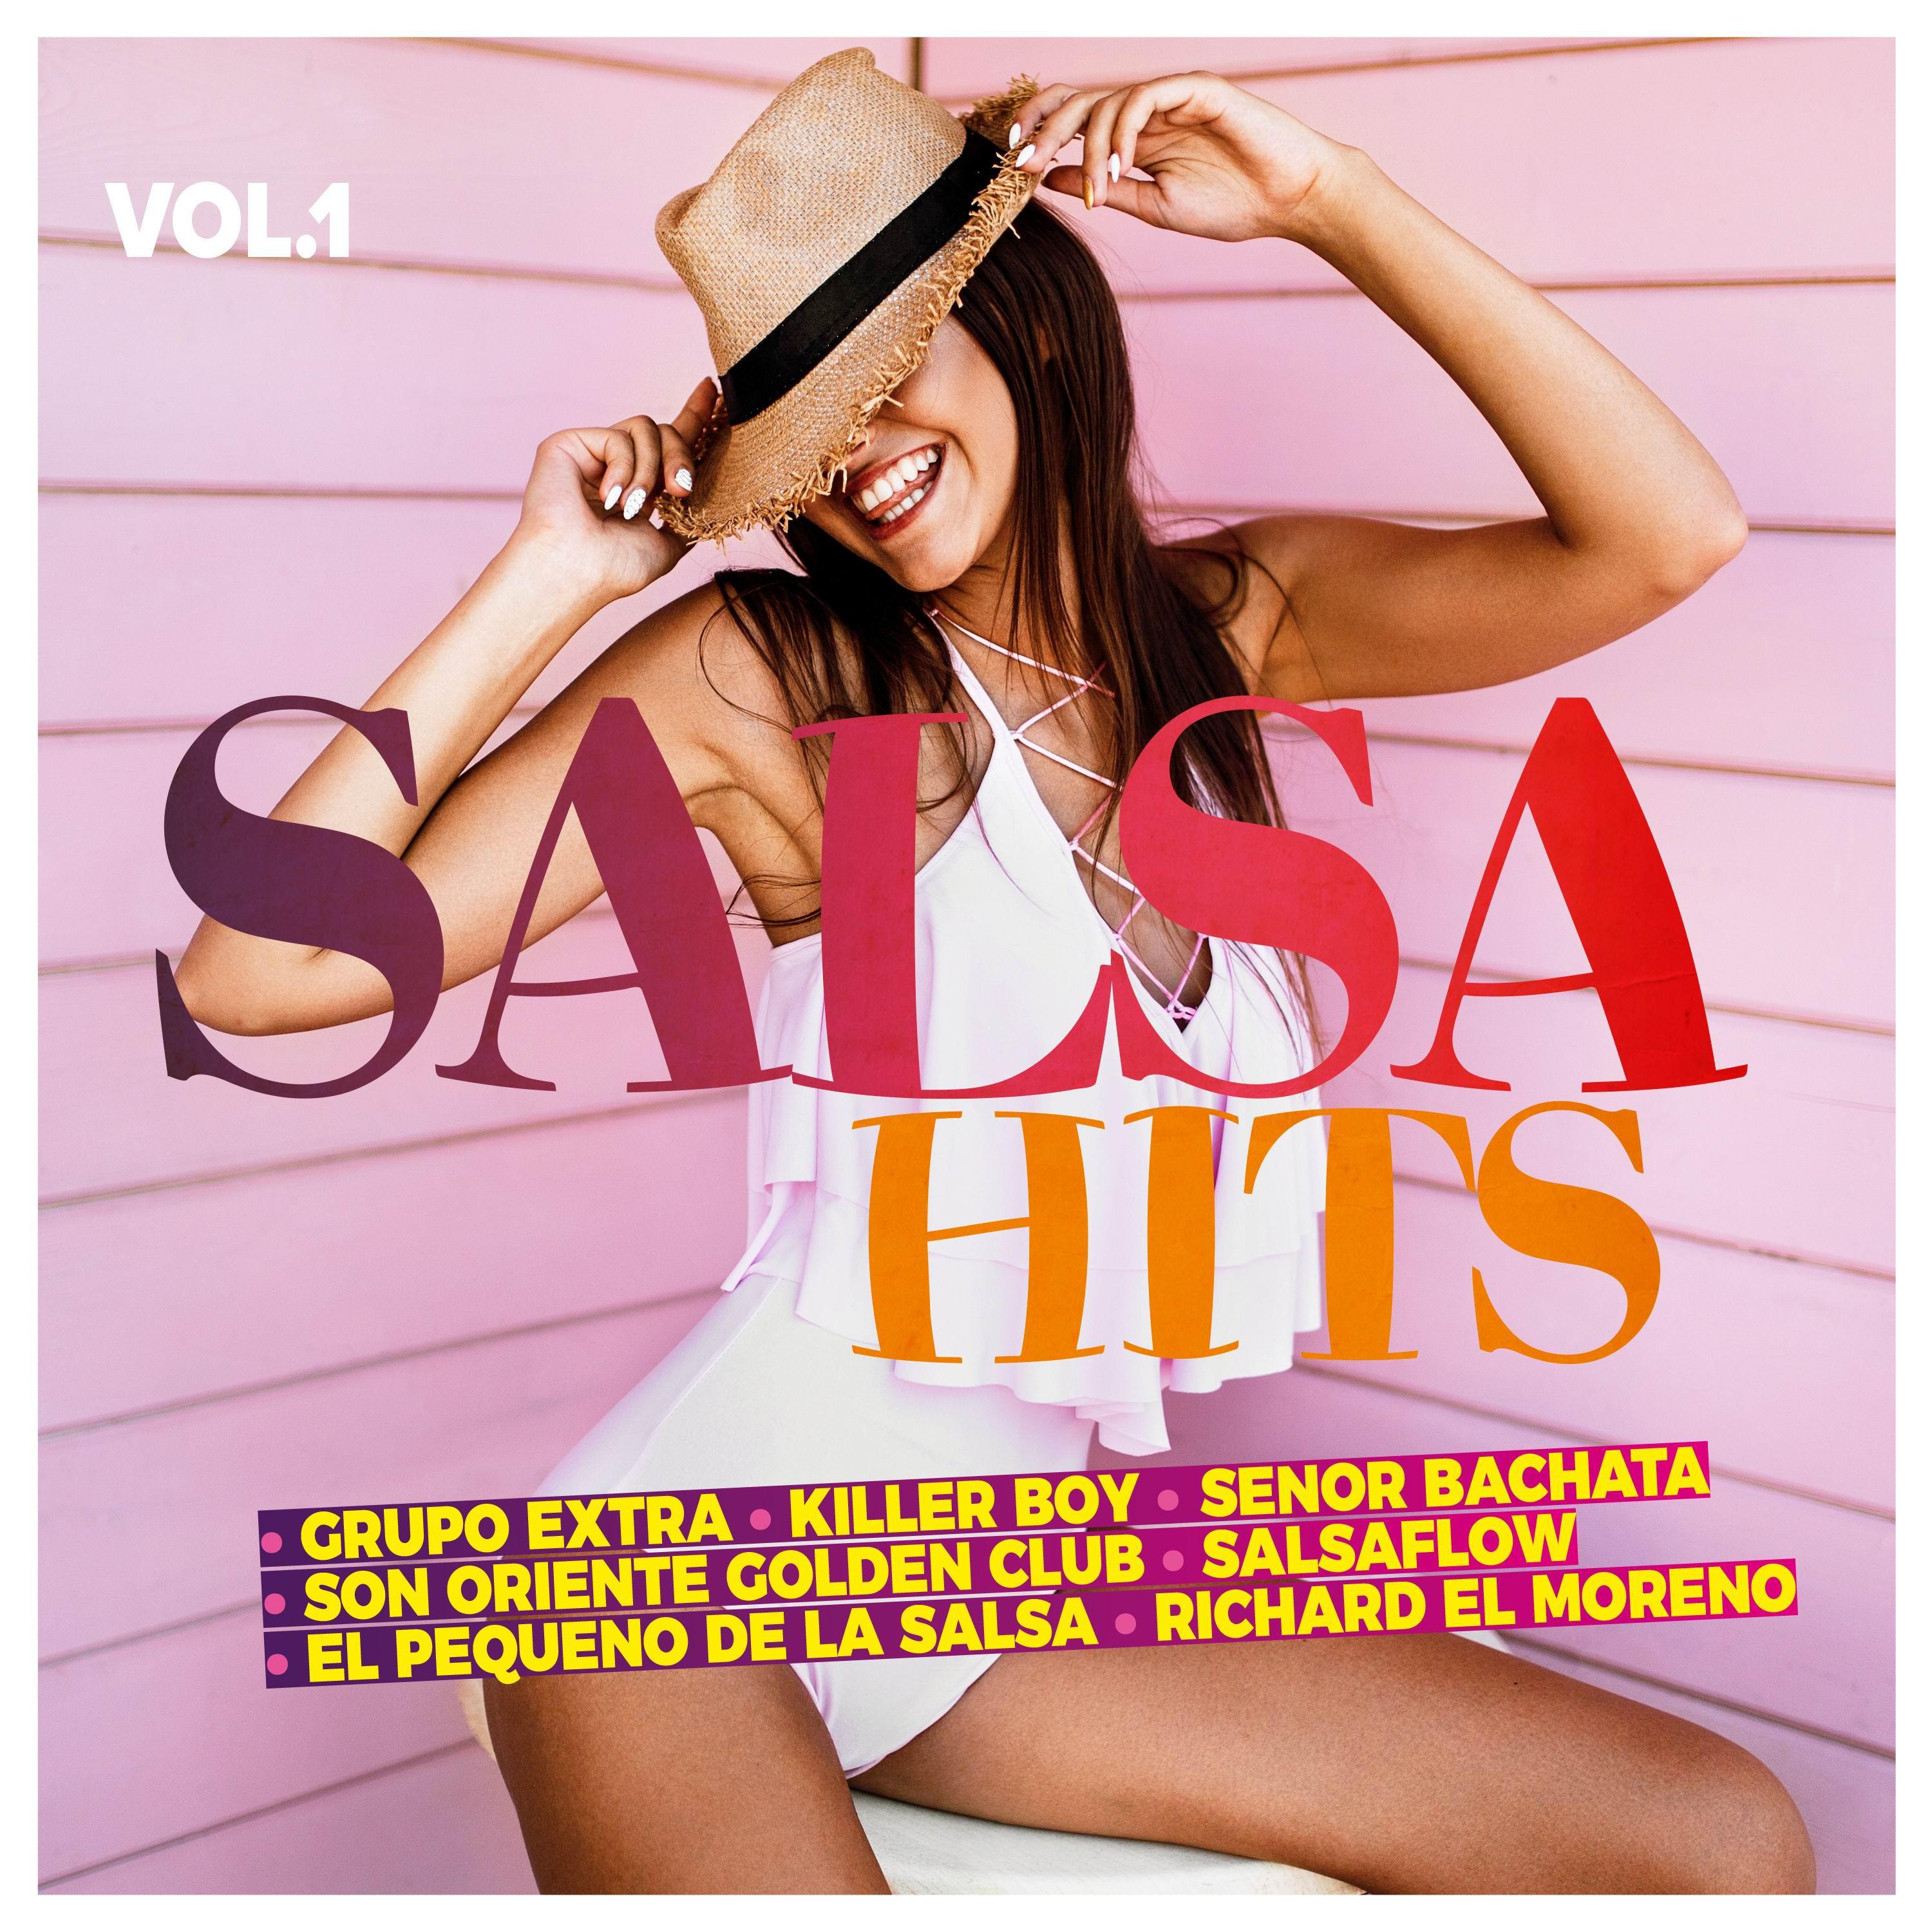 Salsa Hits, Vol. 1